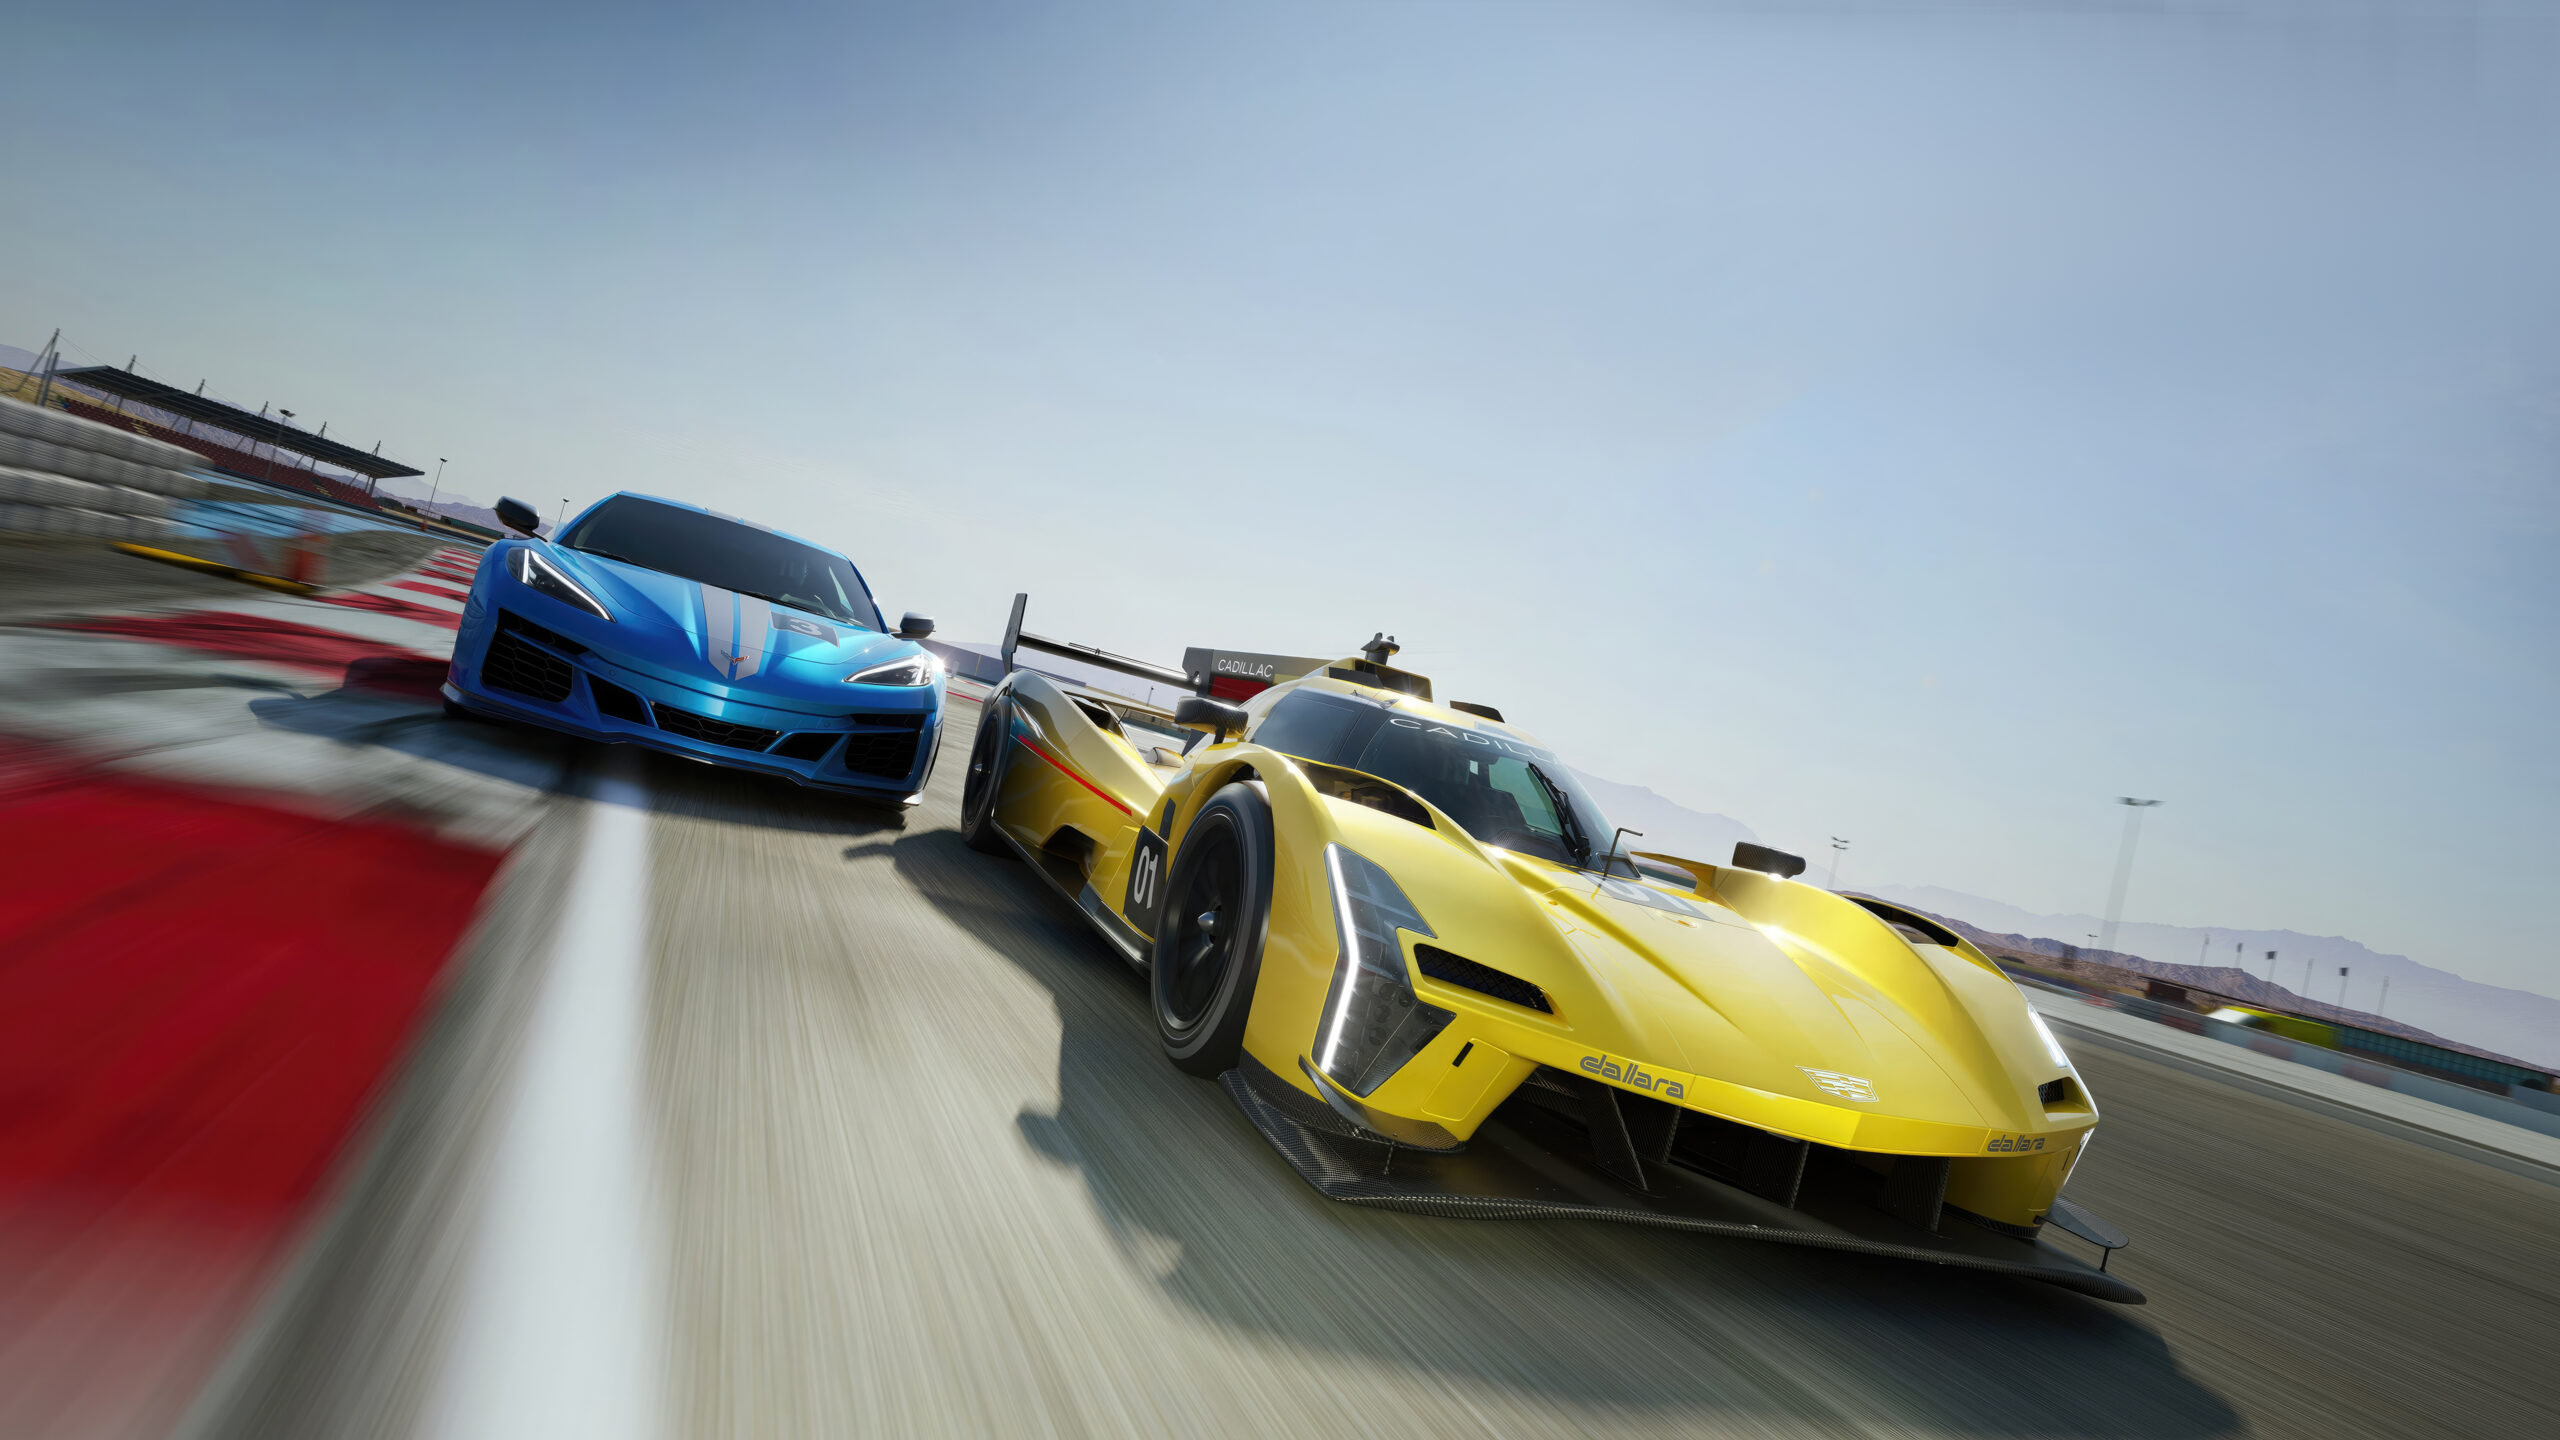 Novo Forza Motorsport será lançado com mais de 500 carros e 20 pistas